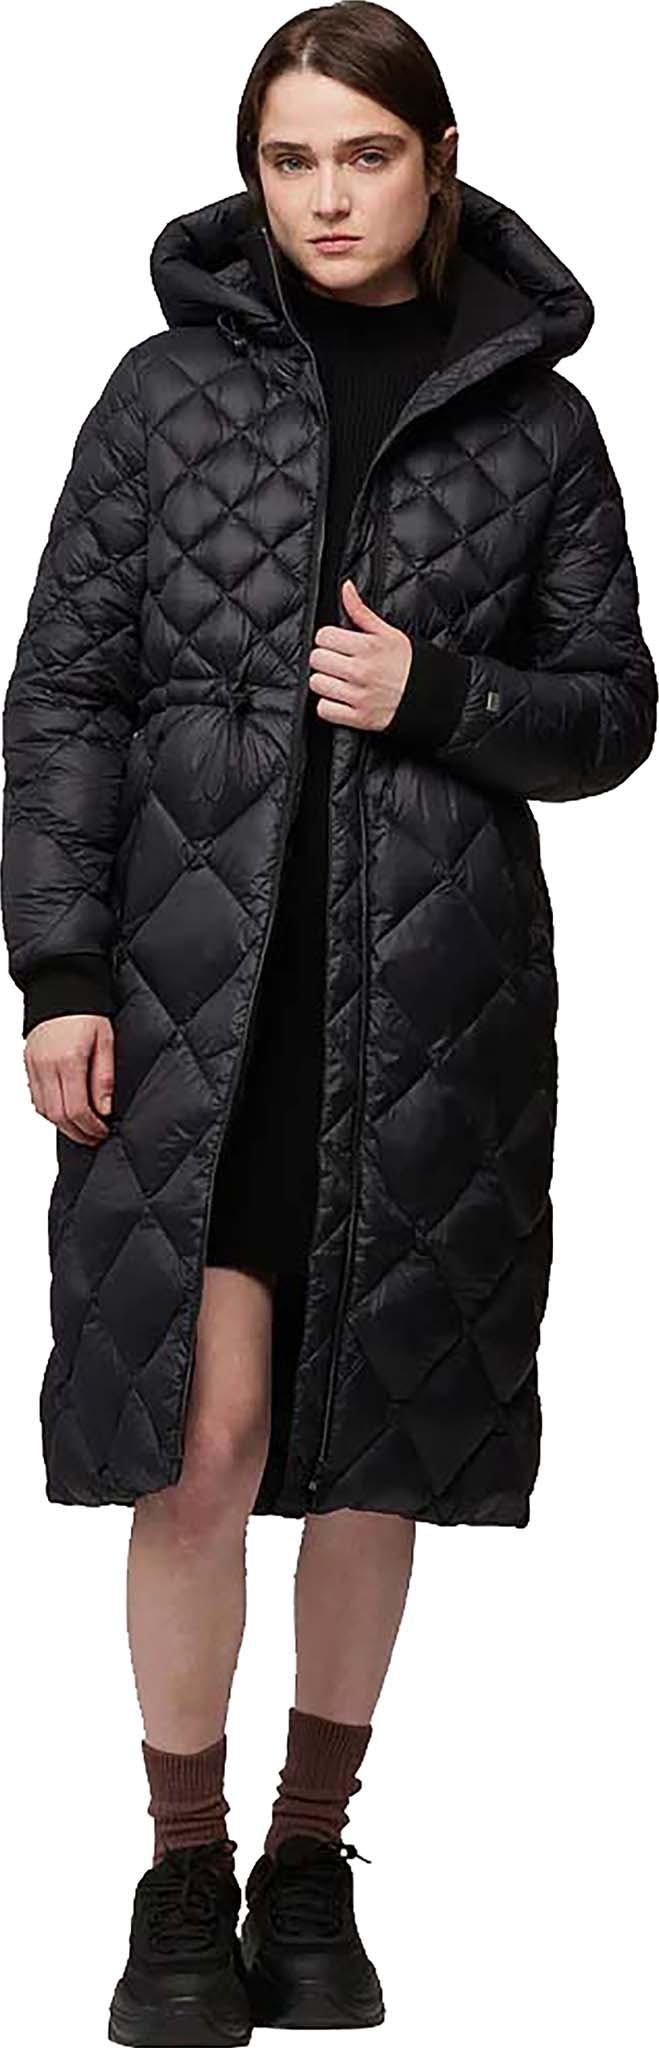 Numéro de l'image de la galerie de produits 2 pour le produit Manteau aux mollets en duvet léger durable avec capuchon Aime - Femme